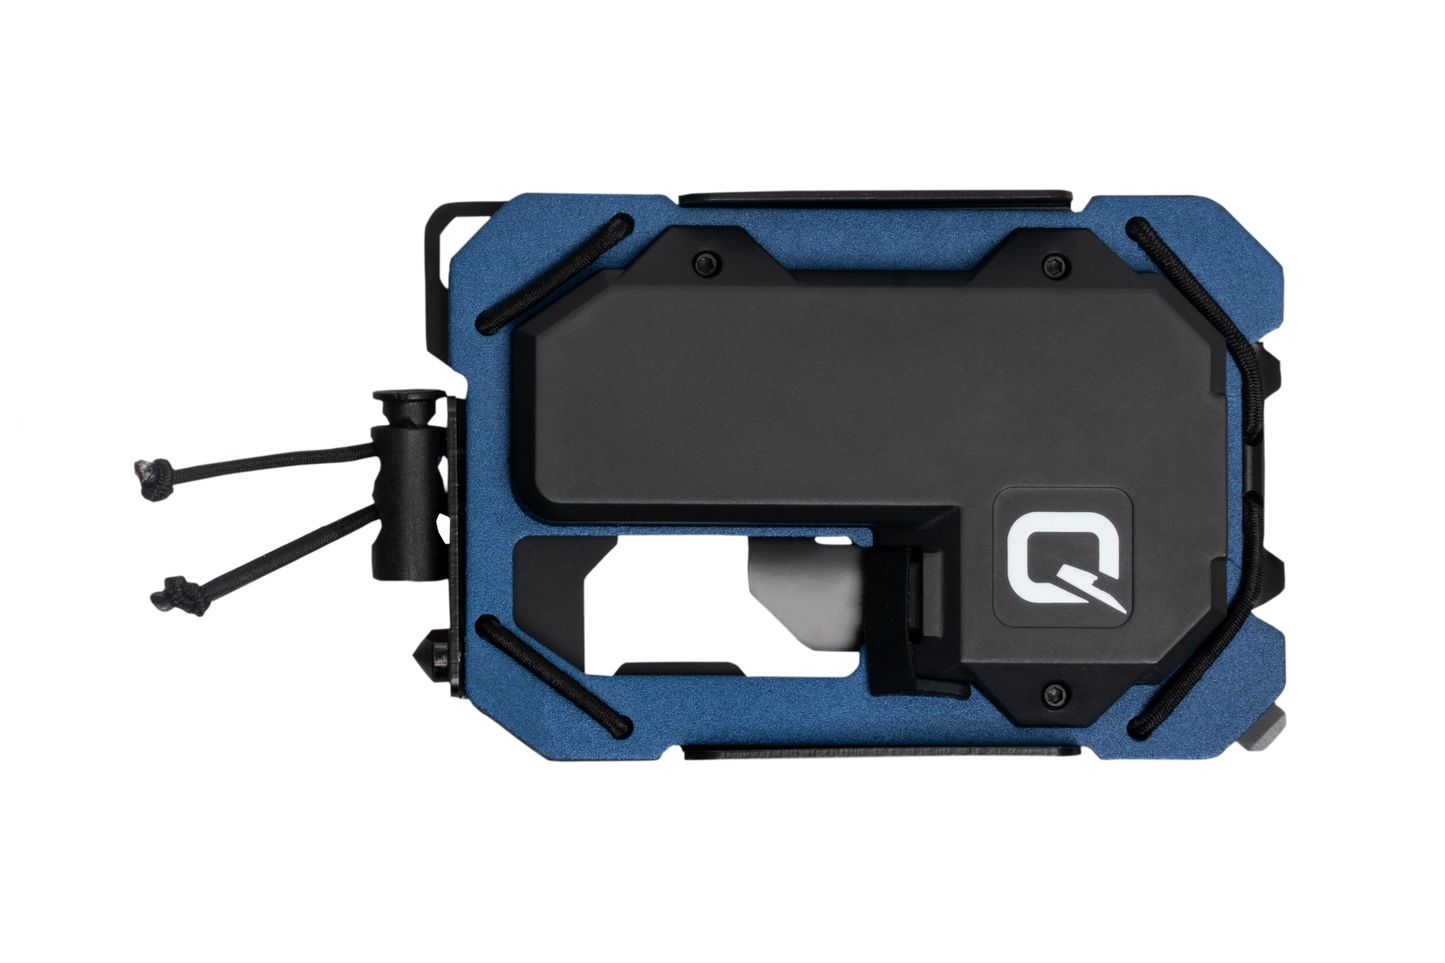 Quicklite TAQ Wallet Tactical LED Wallet